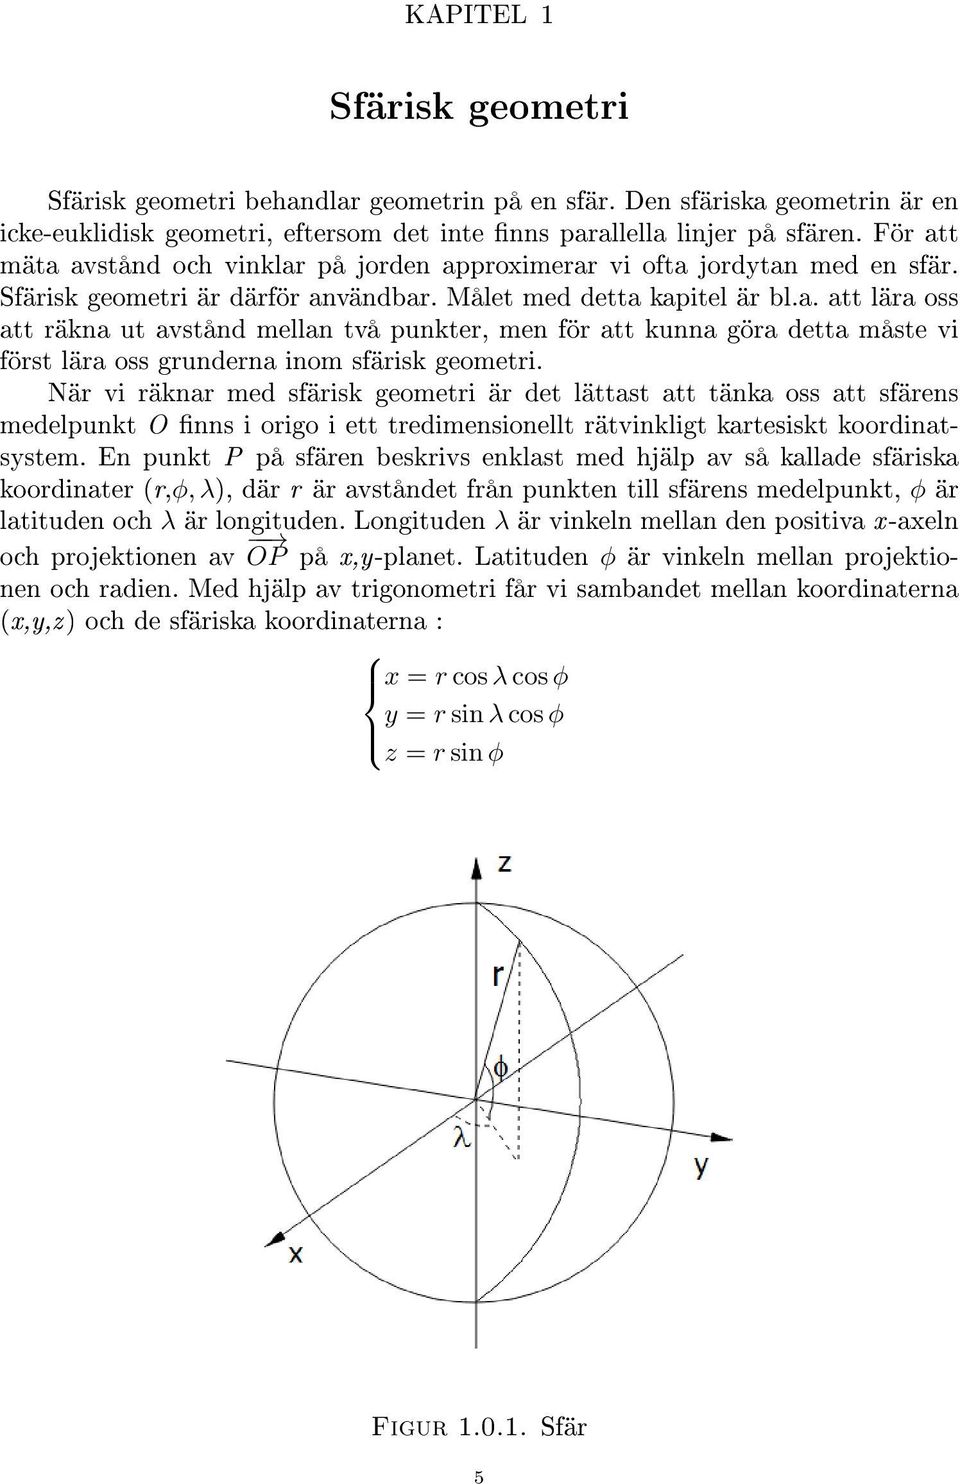 När vi räknar med sfärisk geometri är det lättast att tänka oss att sfärens medelpunkt O nns i origo i ett tredimensionellt rätvinkligt kartesiskt koordinatsystem.